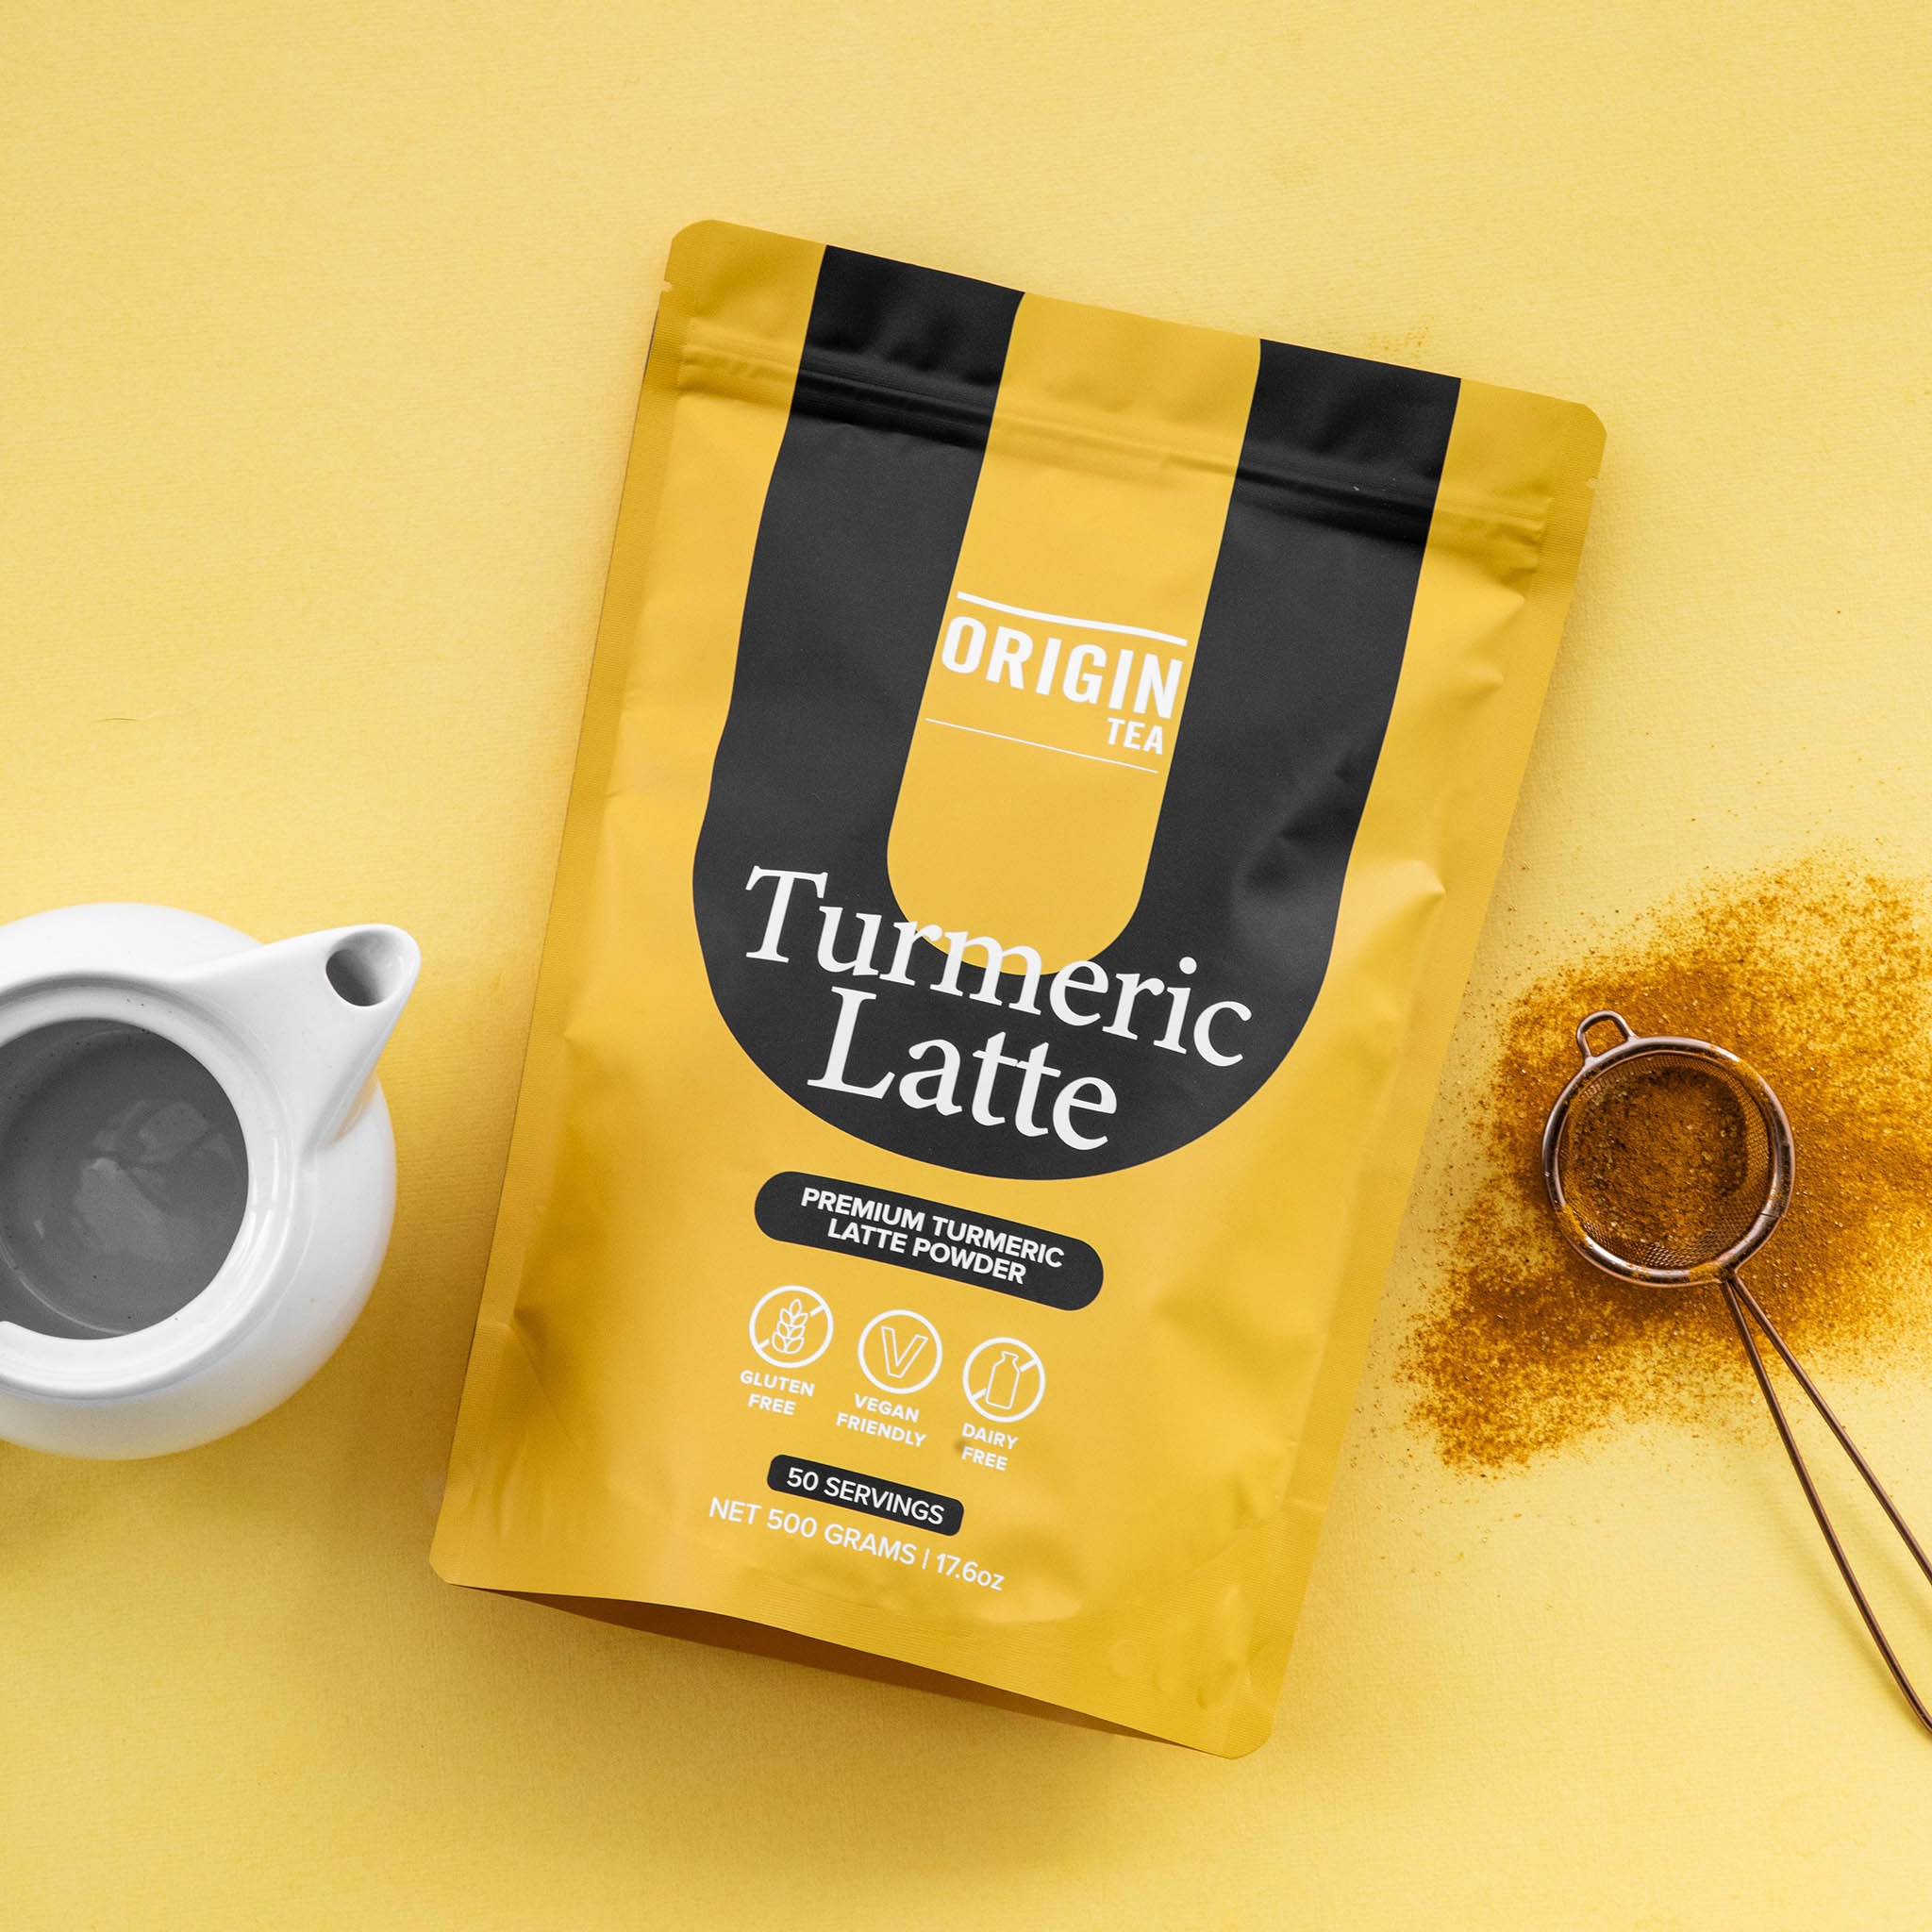 Caffeine Free Turmeric Latte - 500g - Origin Tea